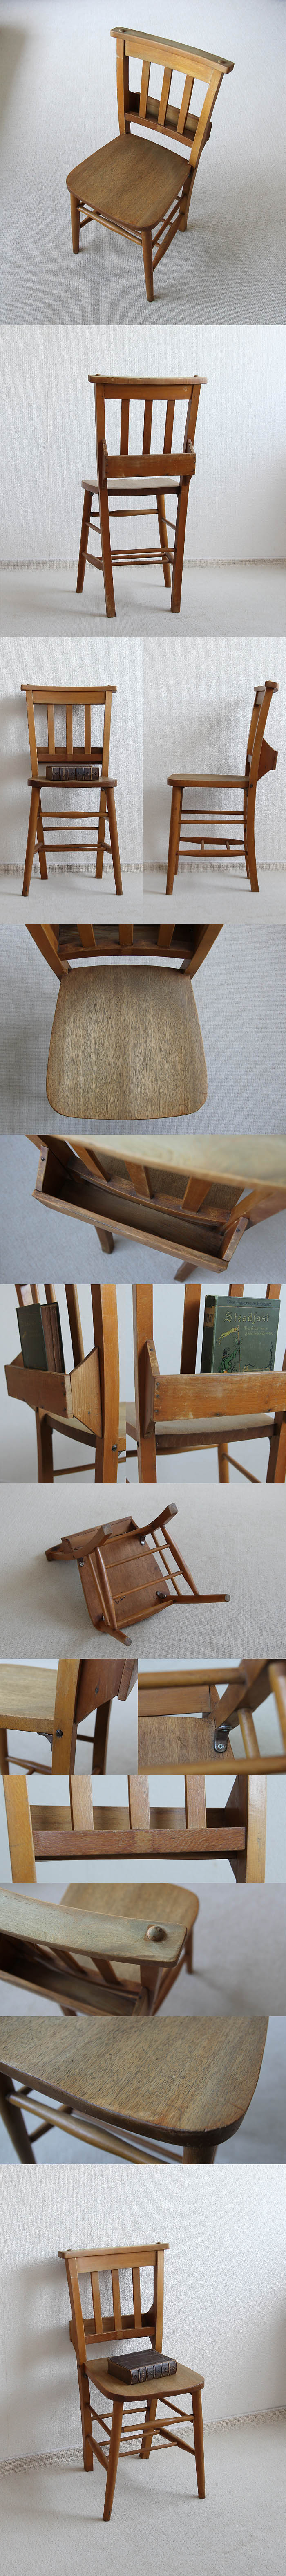 イギリス アンティーク調 チャーチチェア 教会椅子 カントリー インテリア 家具「聖書BOX付」V-926